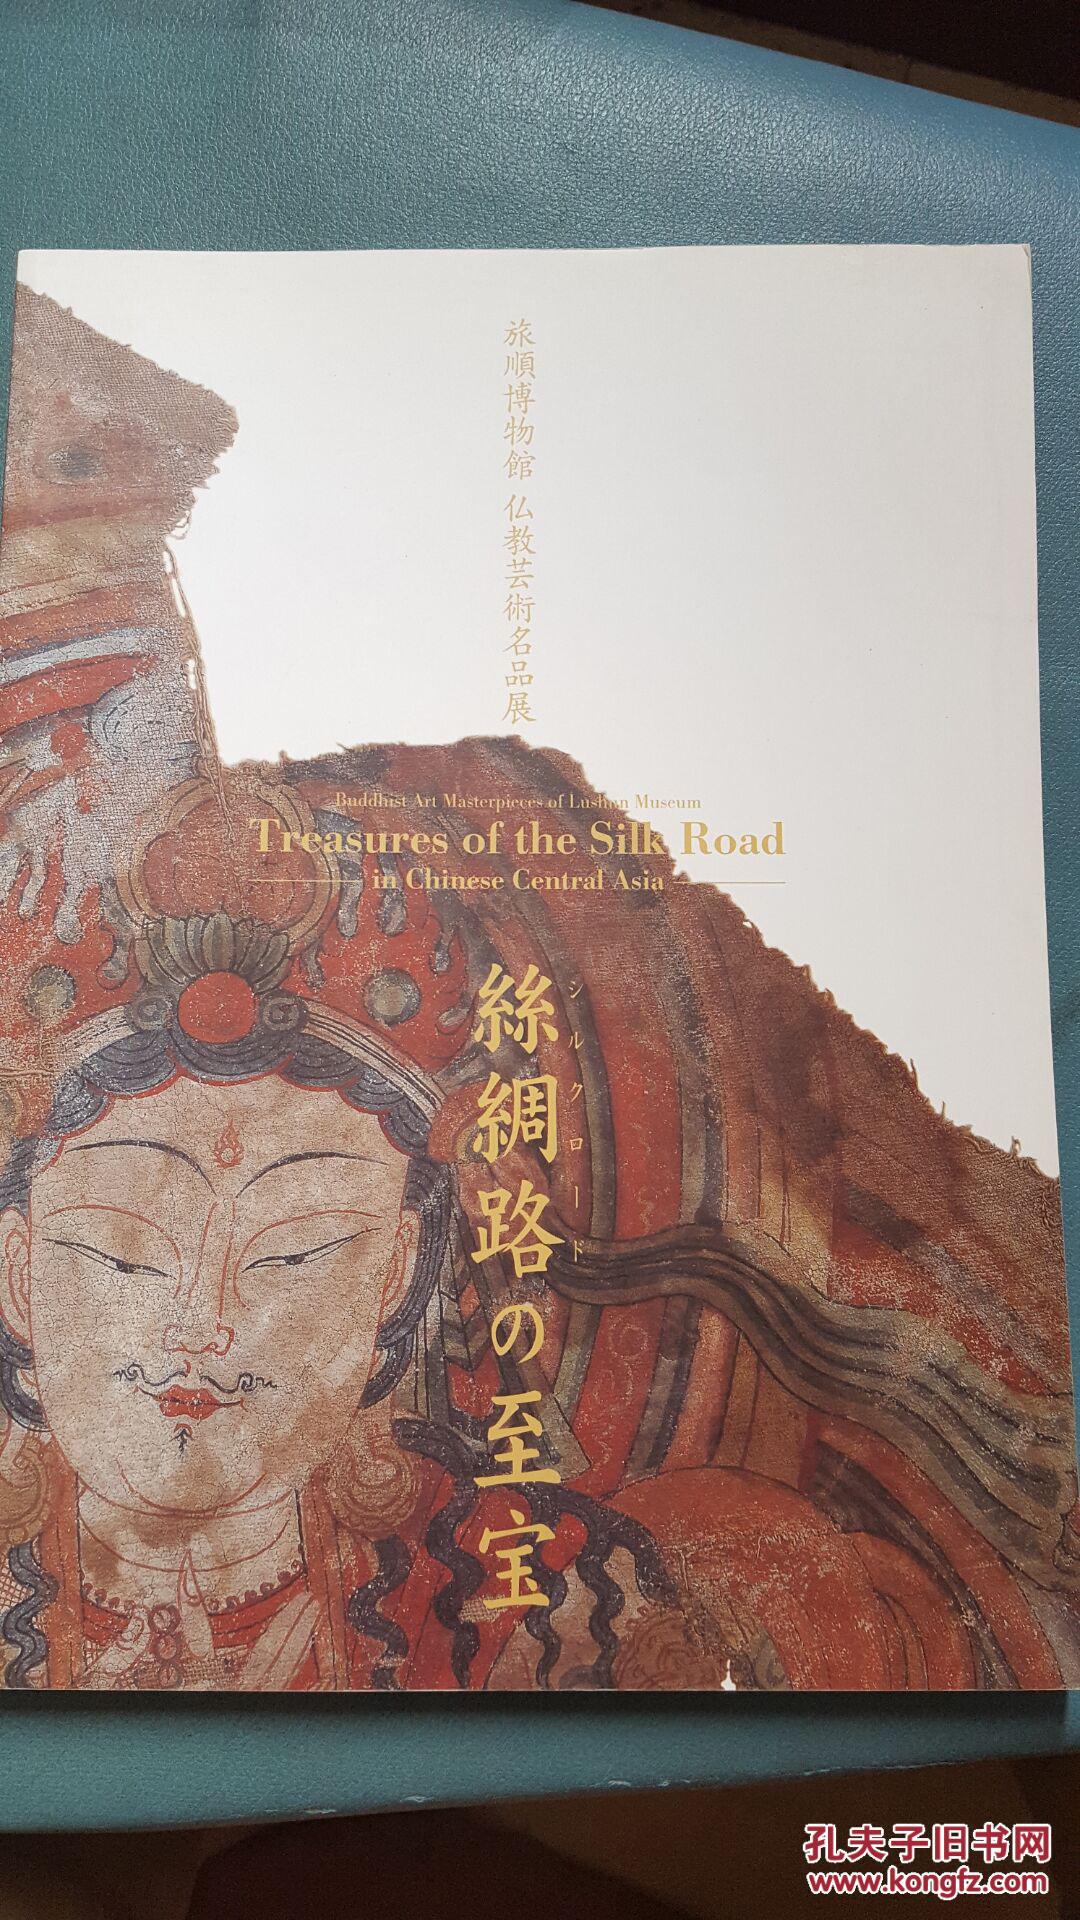 《旅顺博物馆佛教艺术名品展 丝绸之路的至宝》 大量关于新疆丝绸之路的宝物图